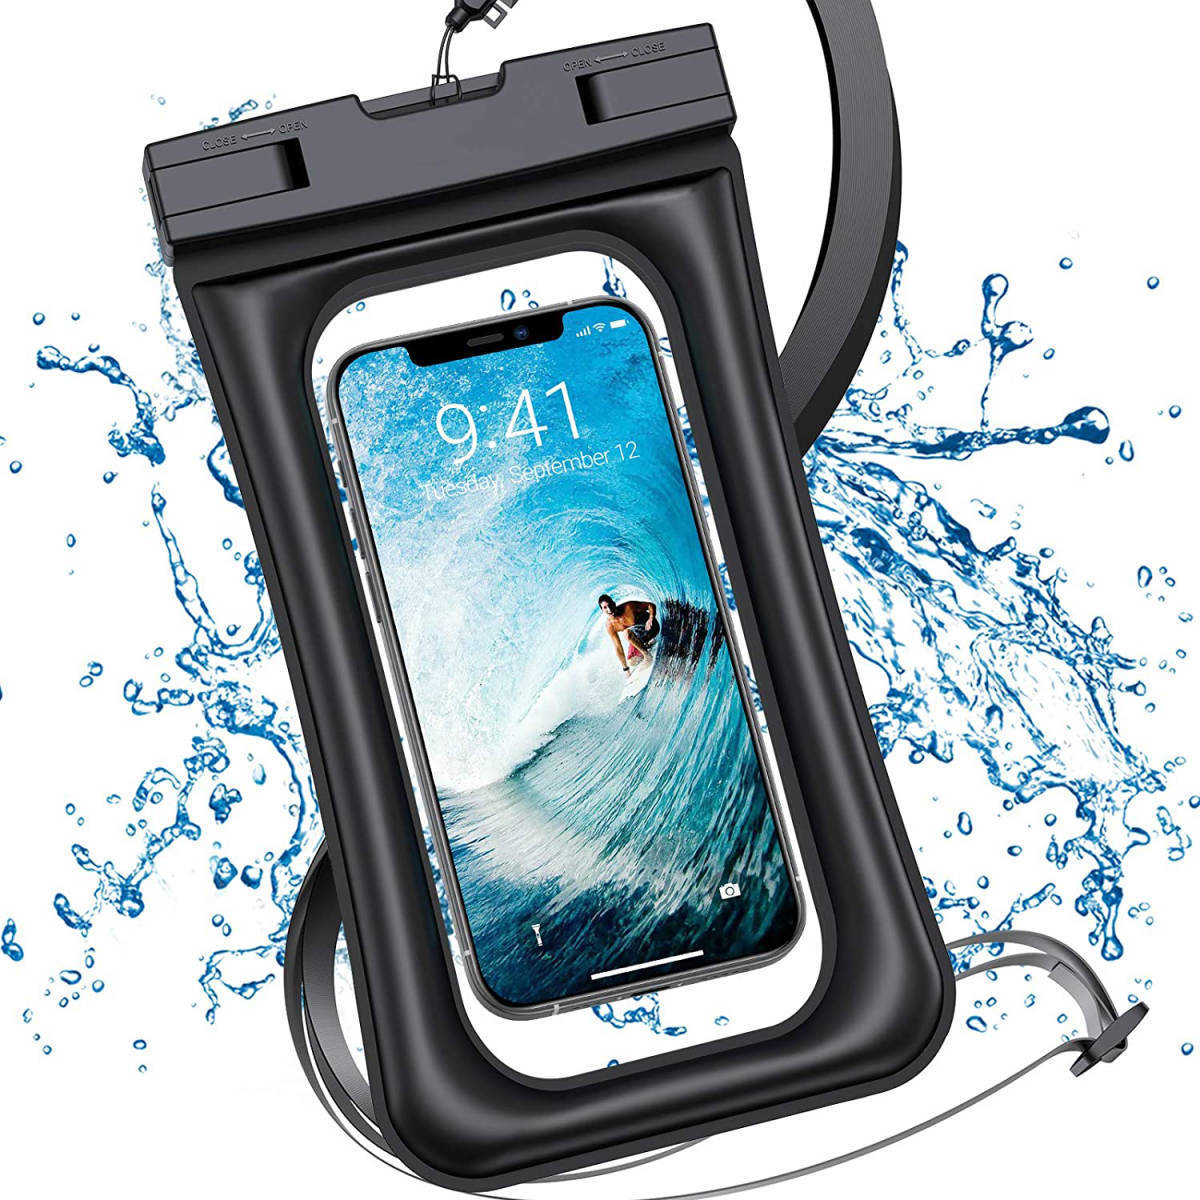 防水ケース スマホ タッチ可能 浮く 防水携帯ケース 完全防水 防水ポーチ スマートホン スマホ本体 カメラ iPhone 防水バッグ 釣りの画像1